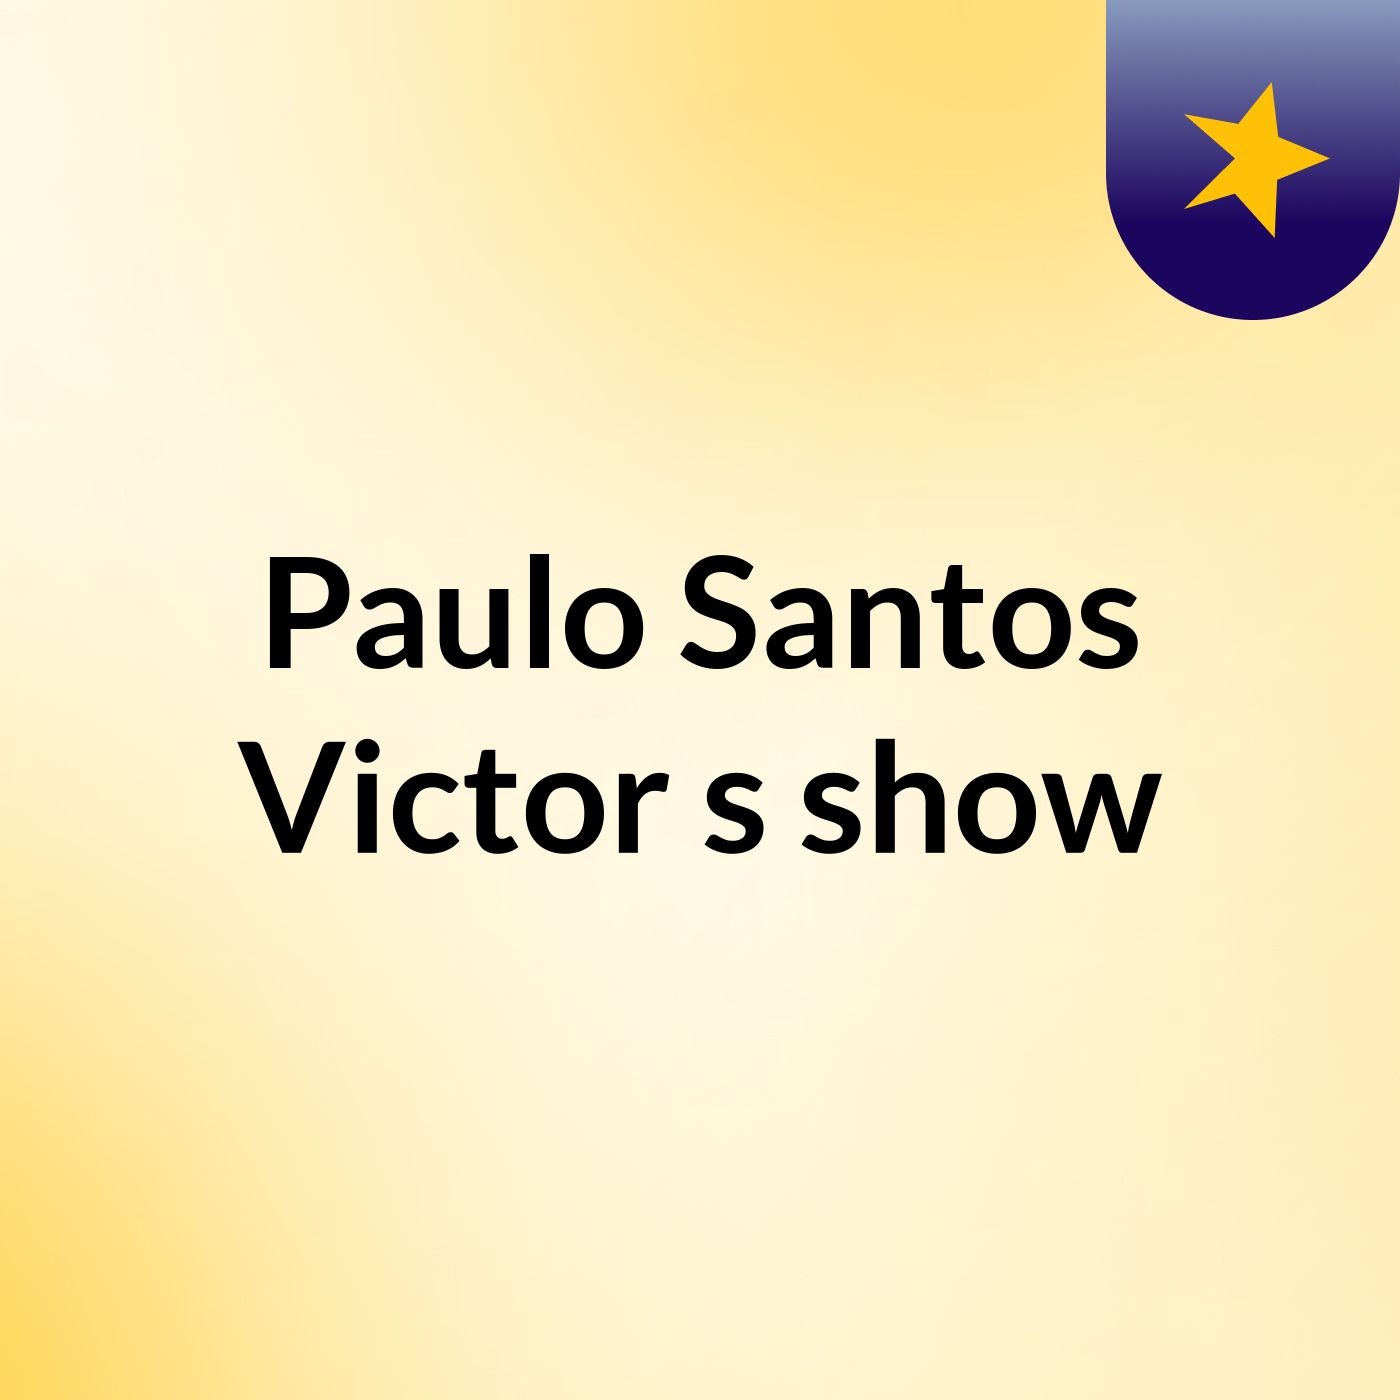 Paulo Santos Victor's show